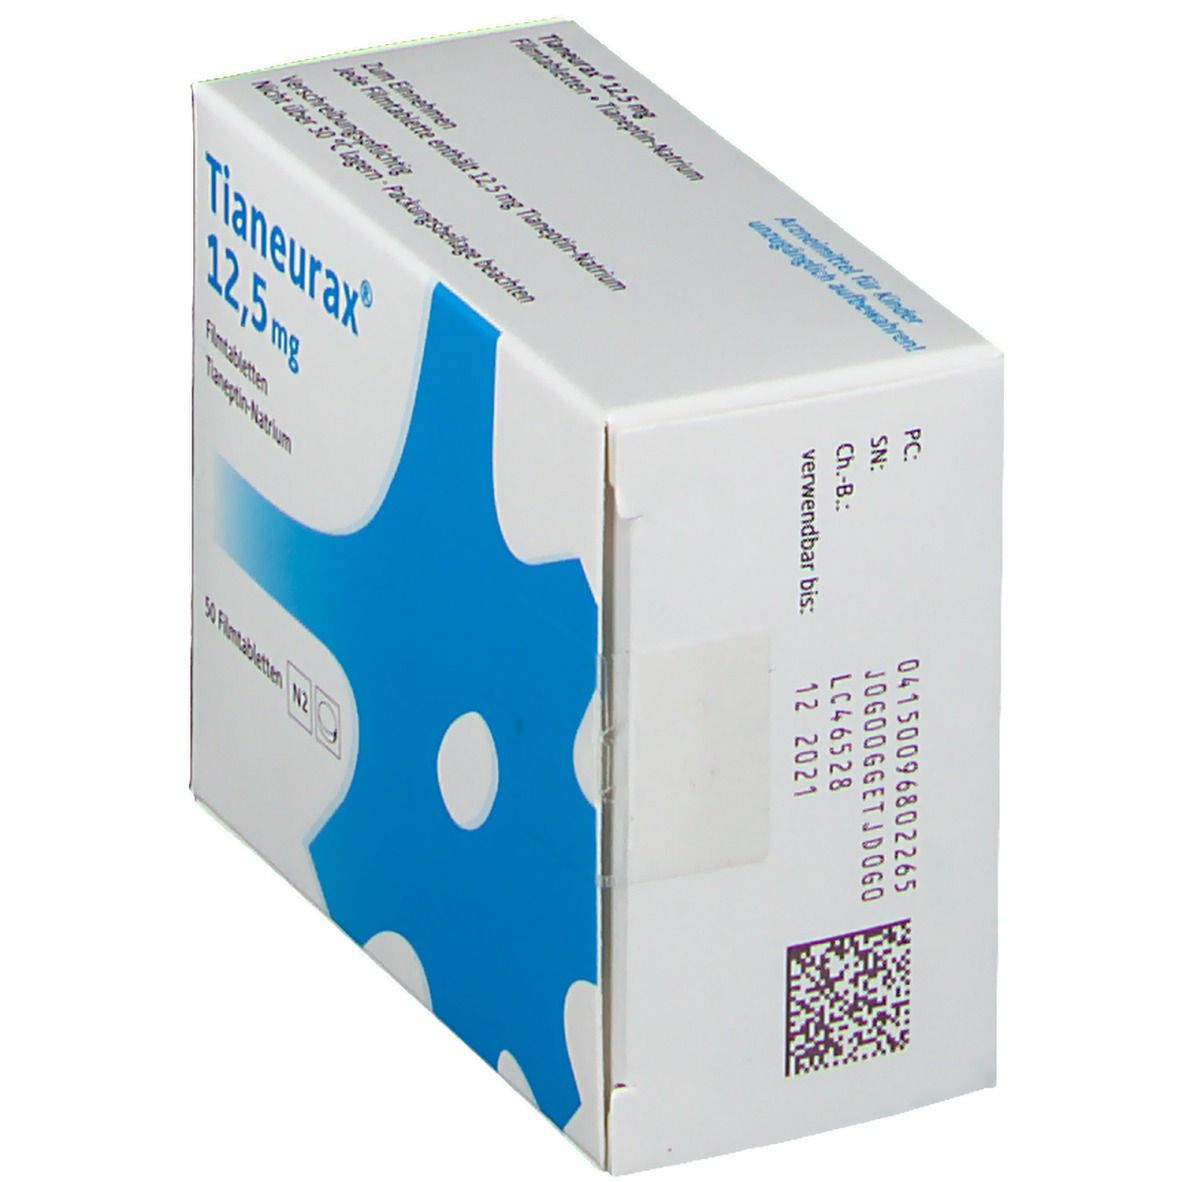 Tianeurax® 12,5 mg